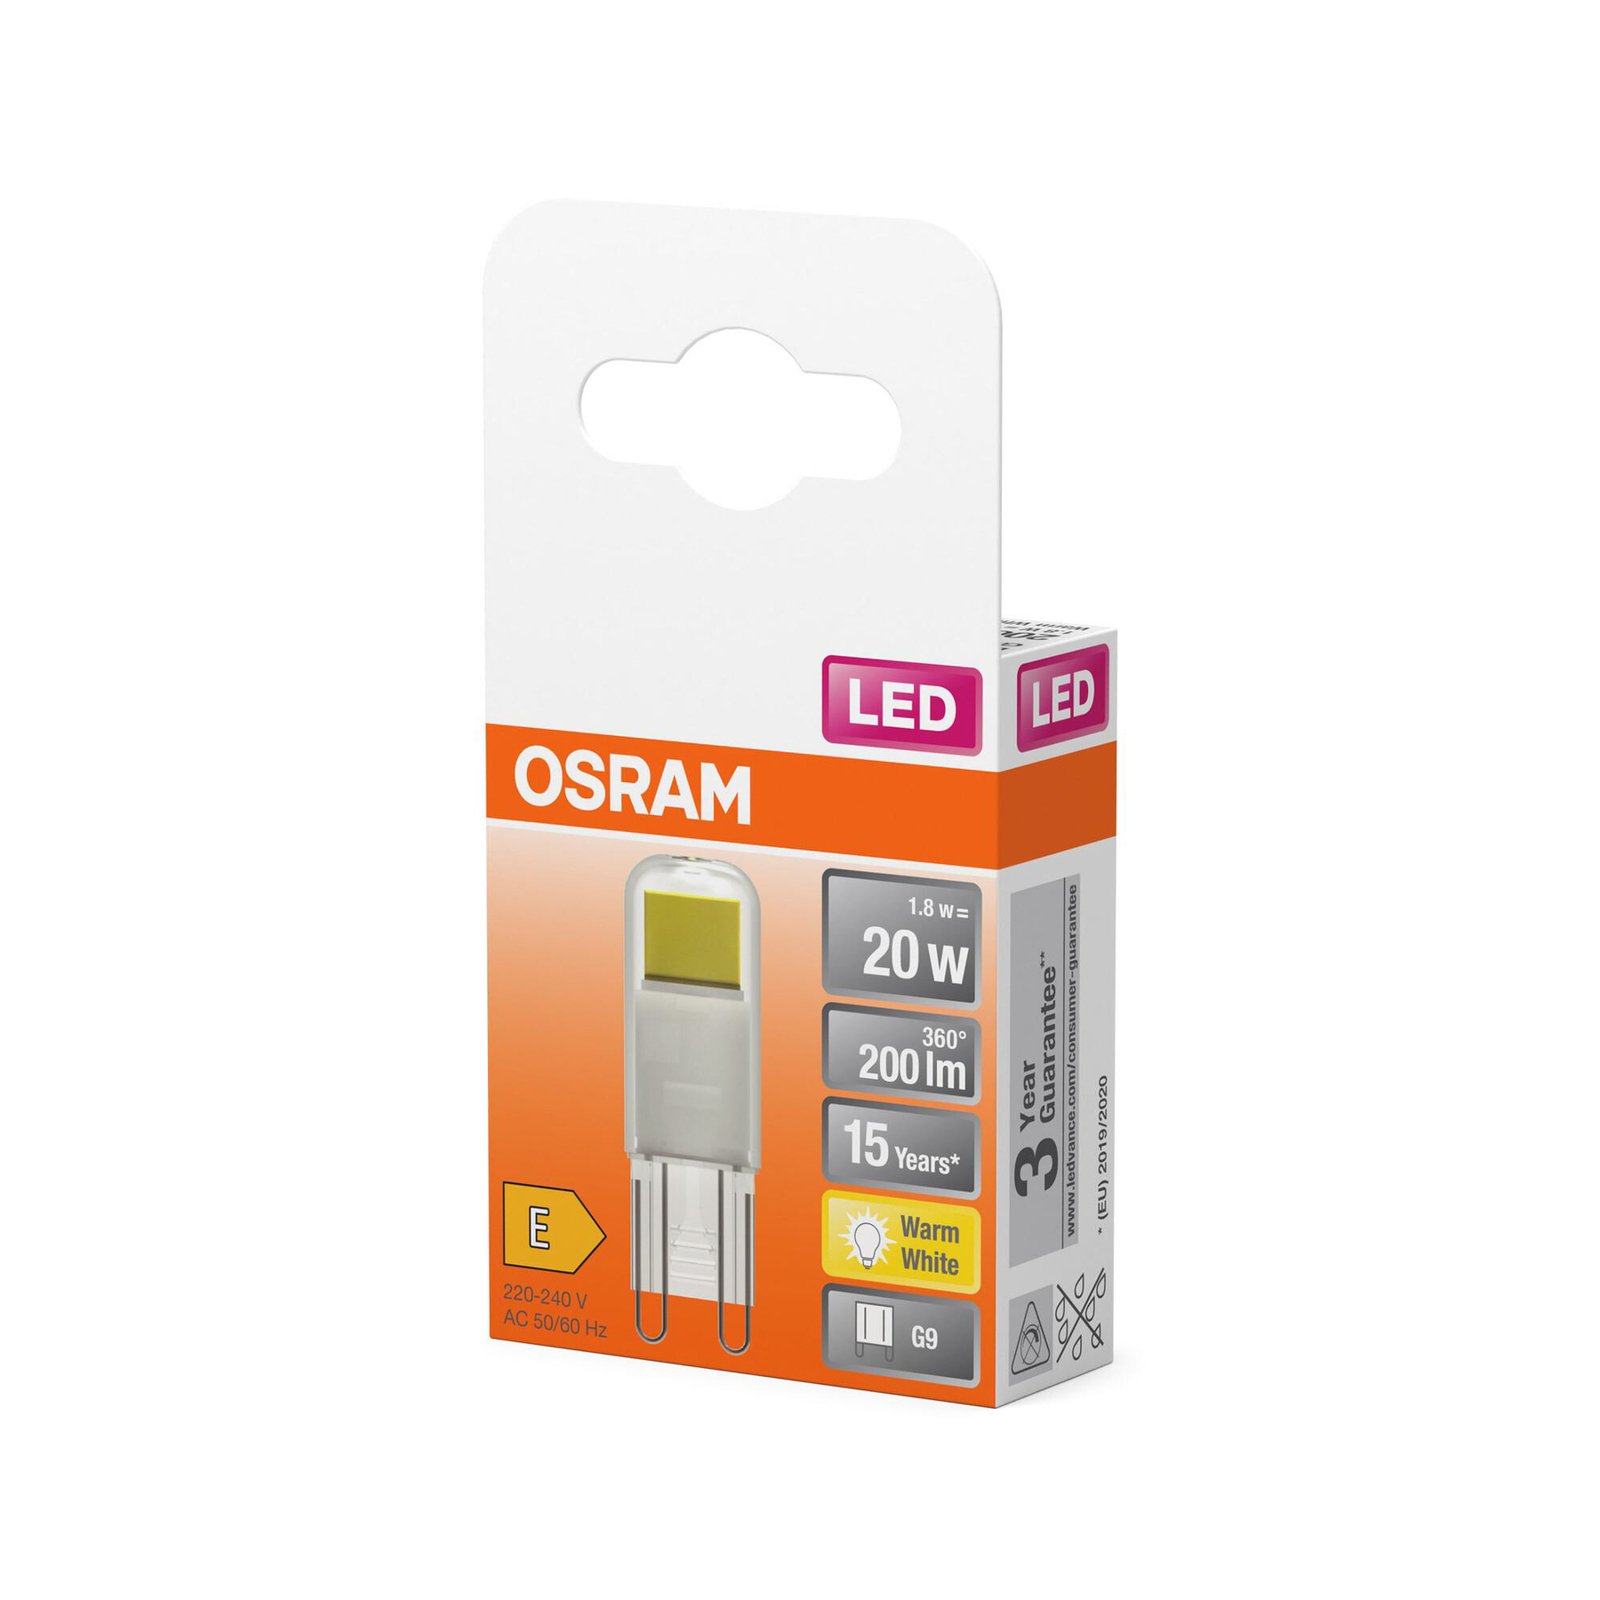 OSRAM LED stiftlamp G9 1,8 W helder 2.700 K